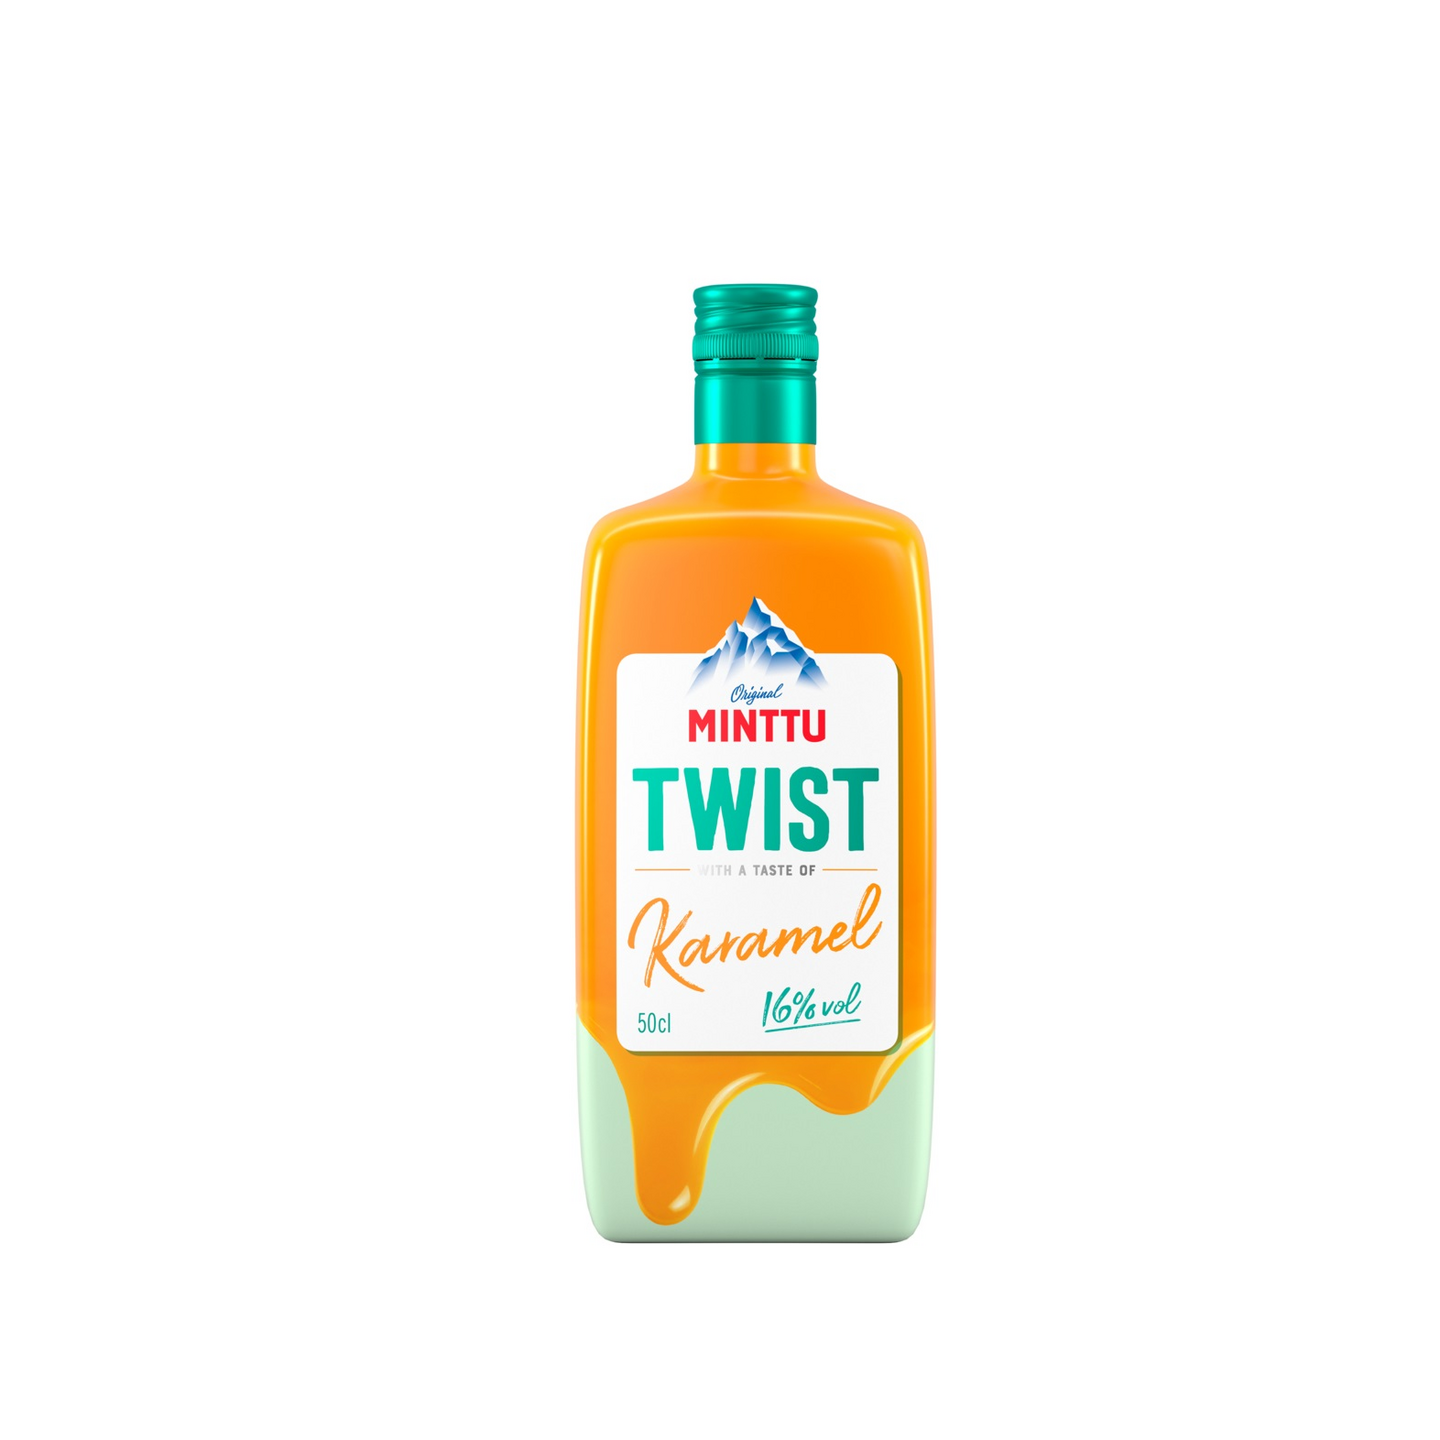 Minttu Twist Karamel 50cl 16%